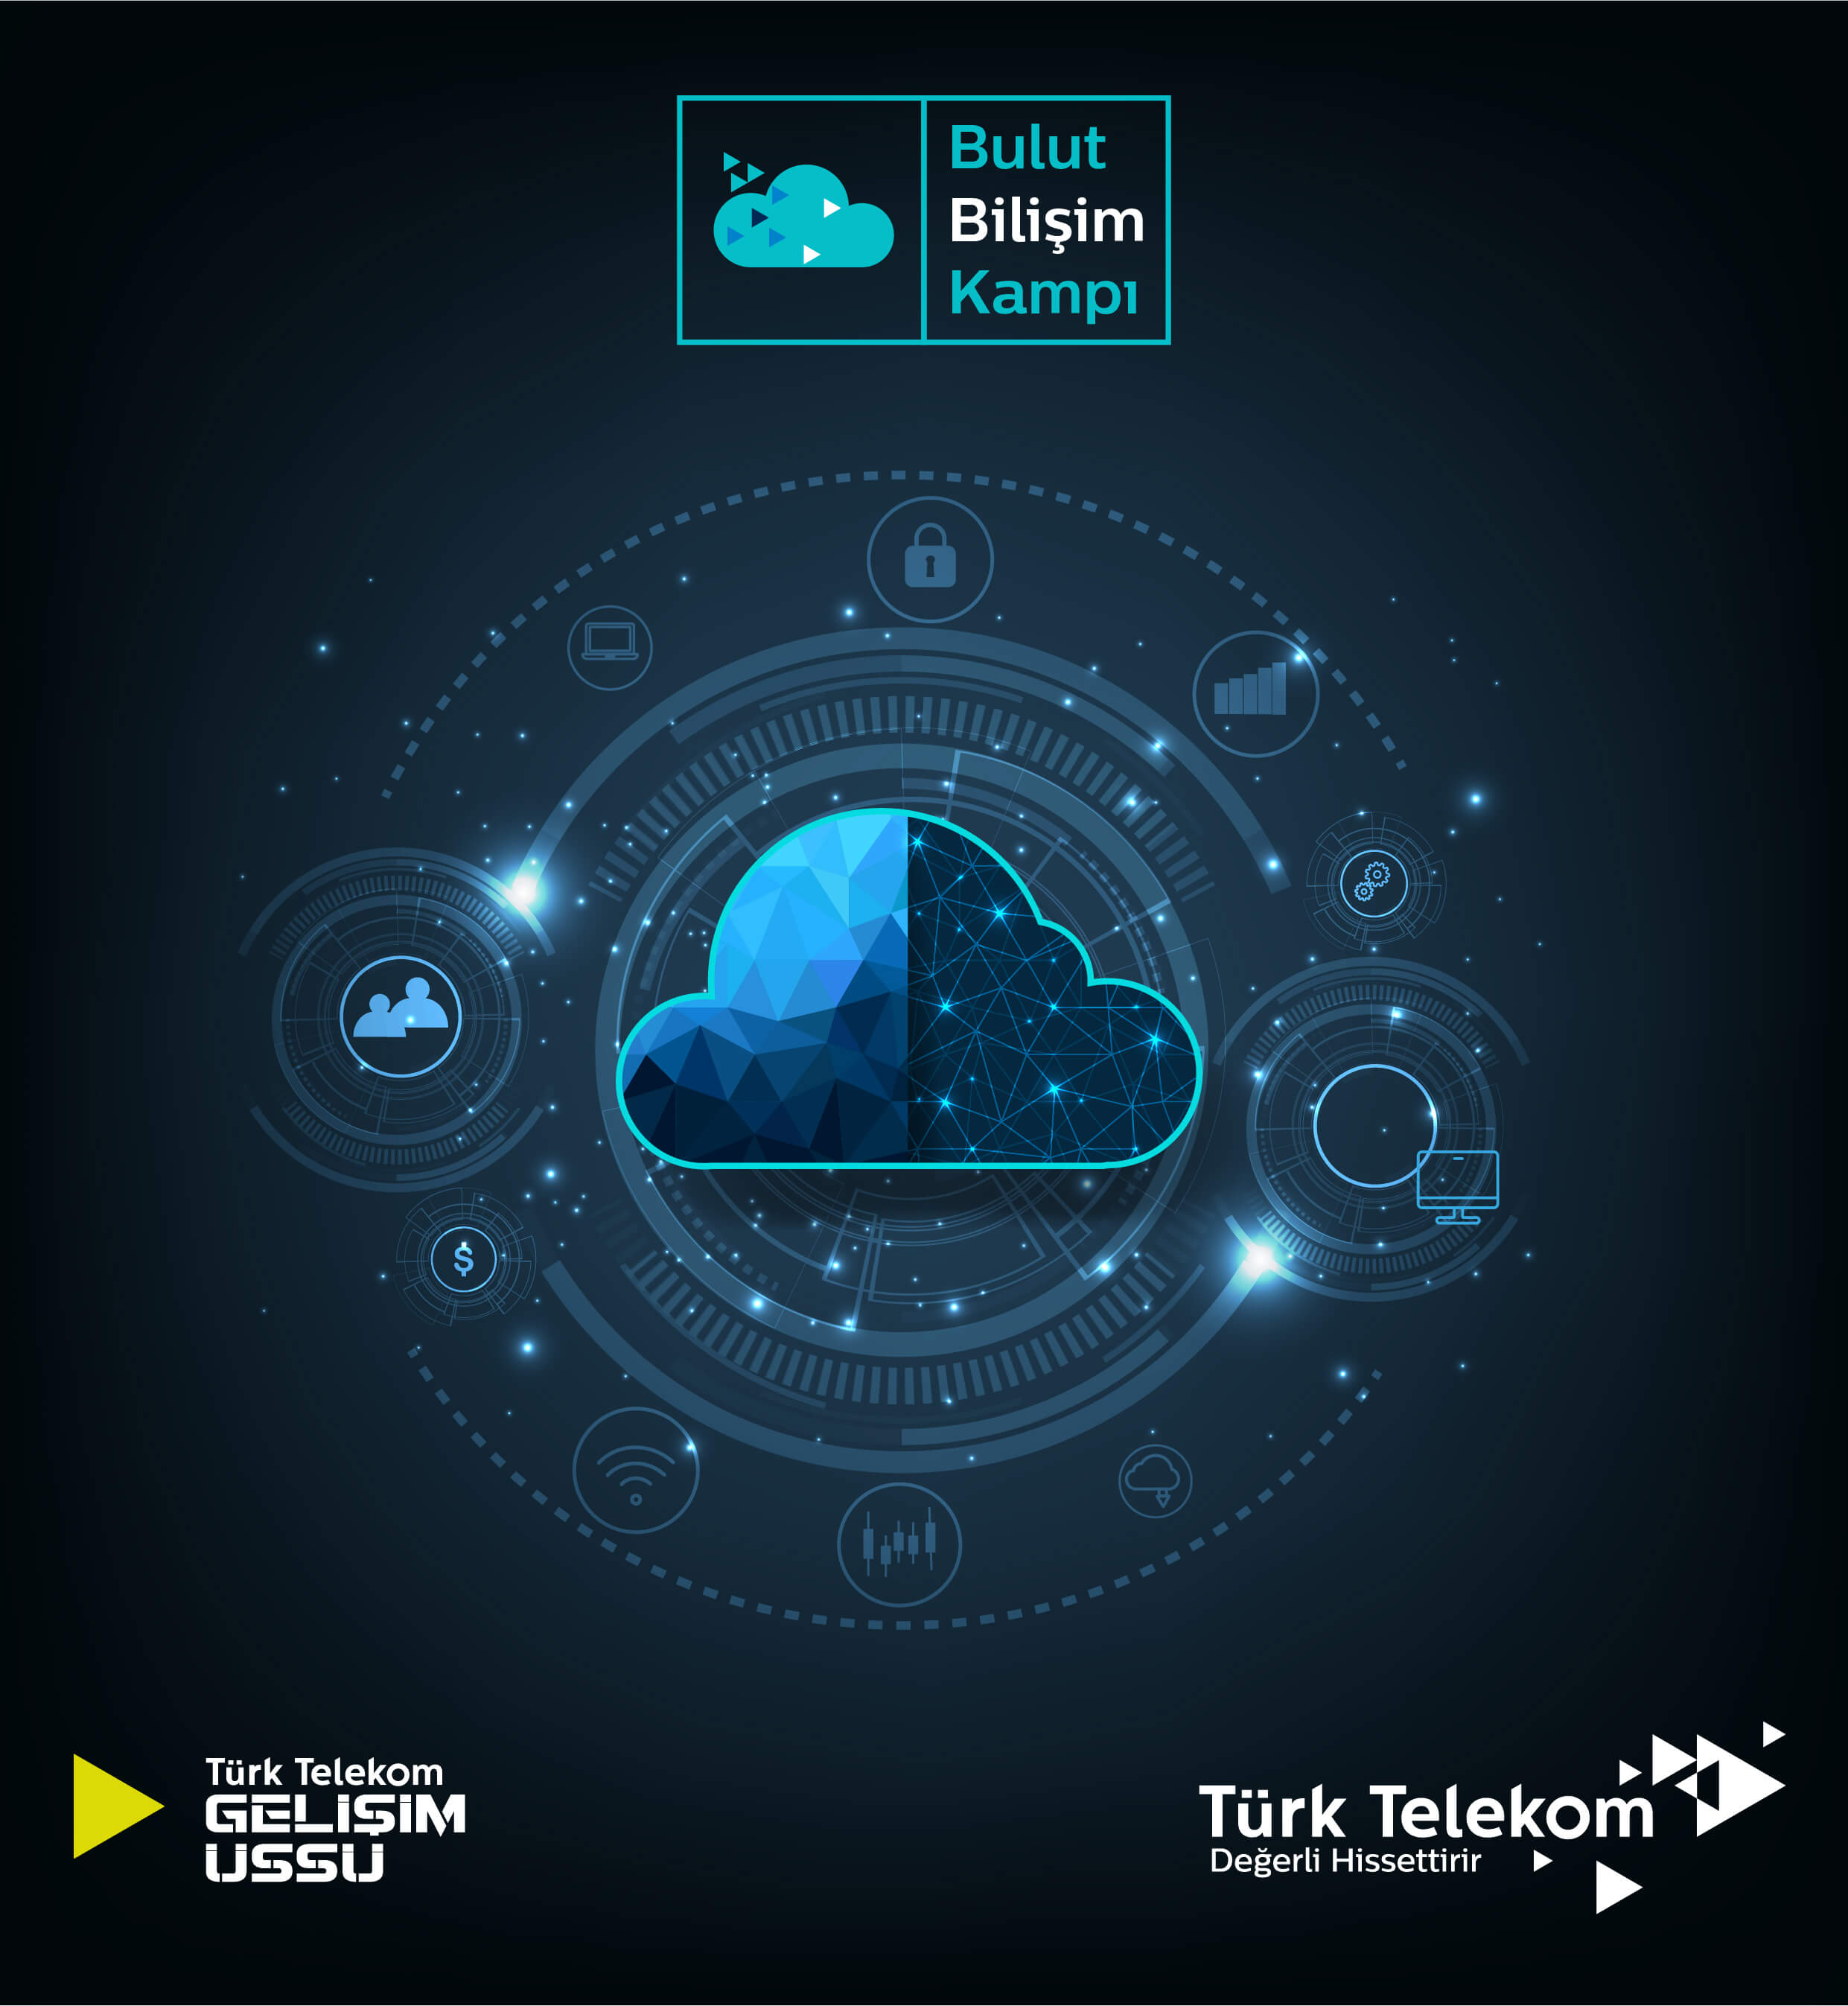 Türk Telekom Bulut Bilişim Kampı başvuruları başladı. Bulut teknolojilerinde uzmanlaşmanın adresi: Türk Telekom